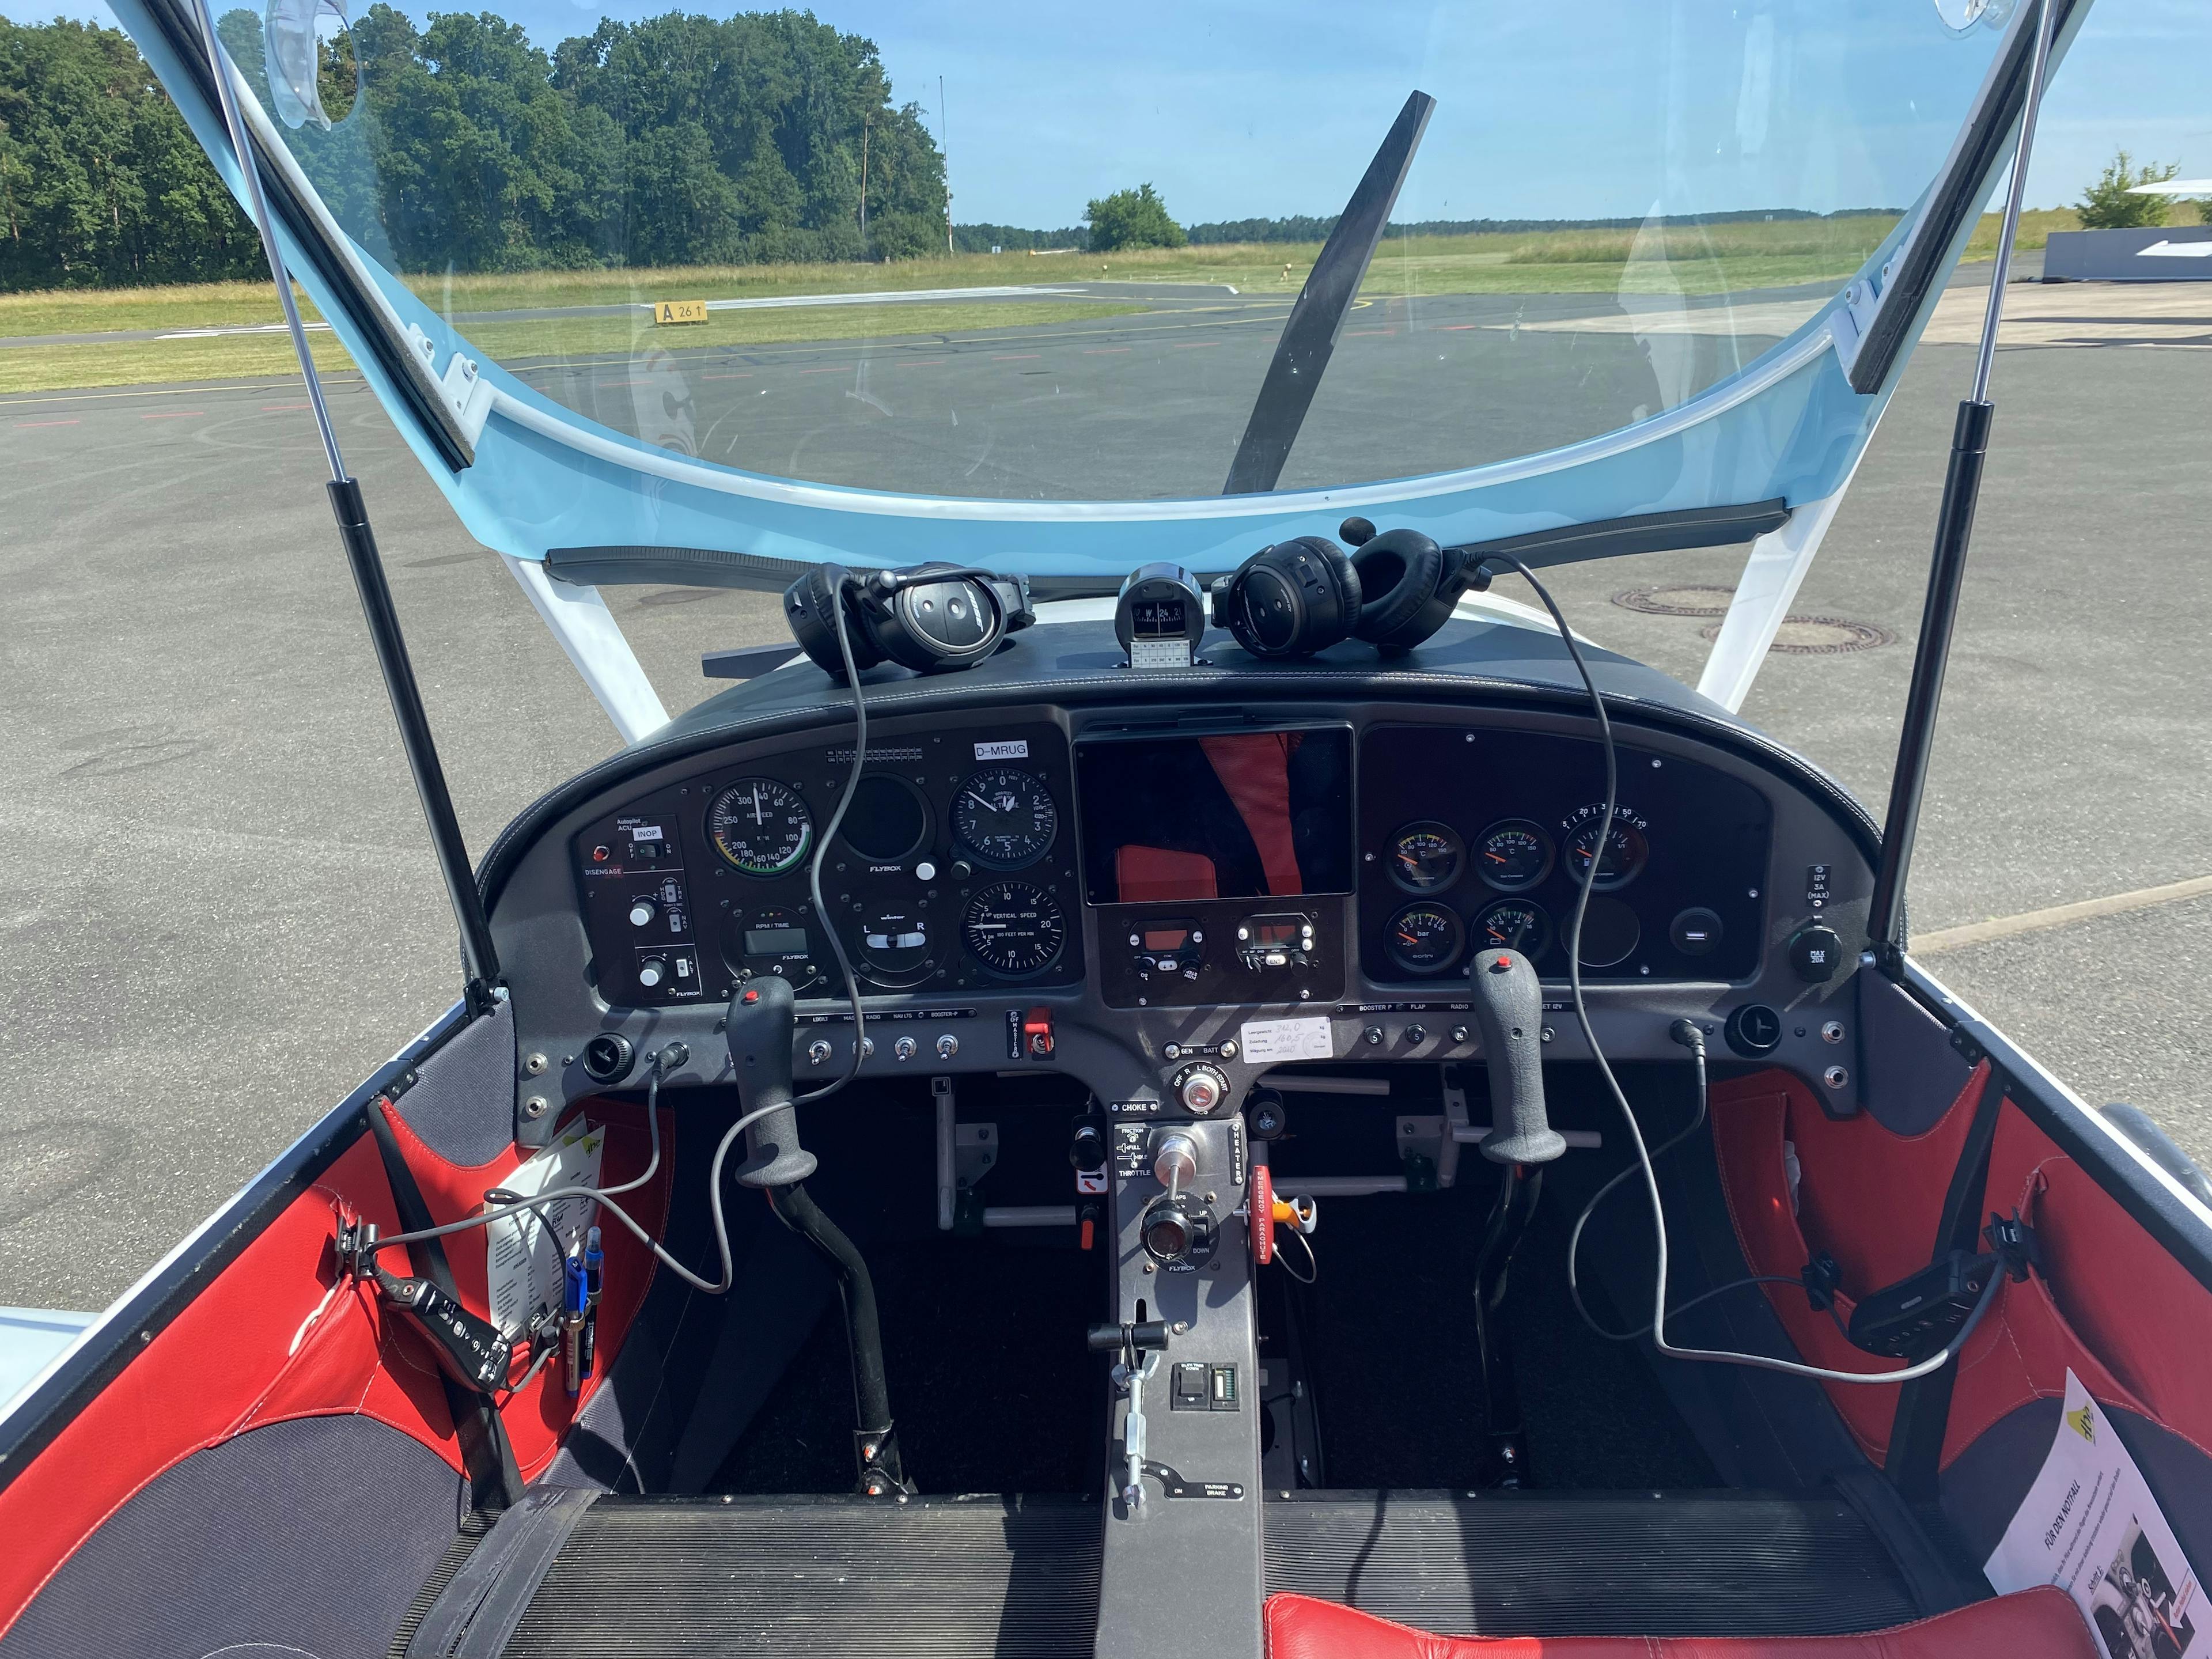 Cockpit-Rundflug in einem der schönsten Ultraleichtflugzeuge des Landes - 160 km Wunschroute